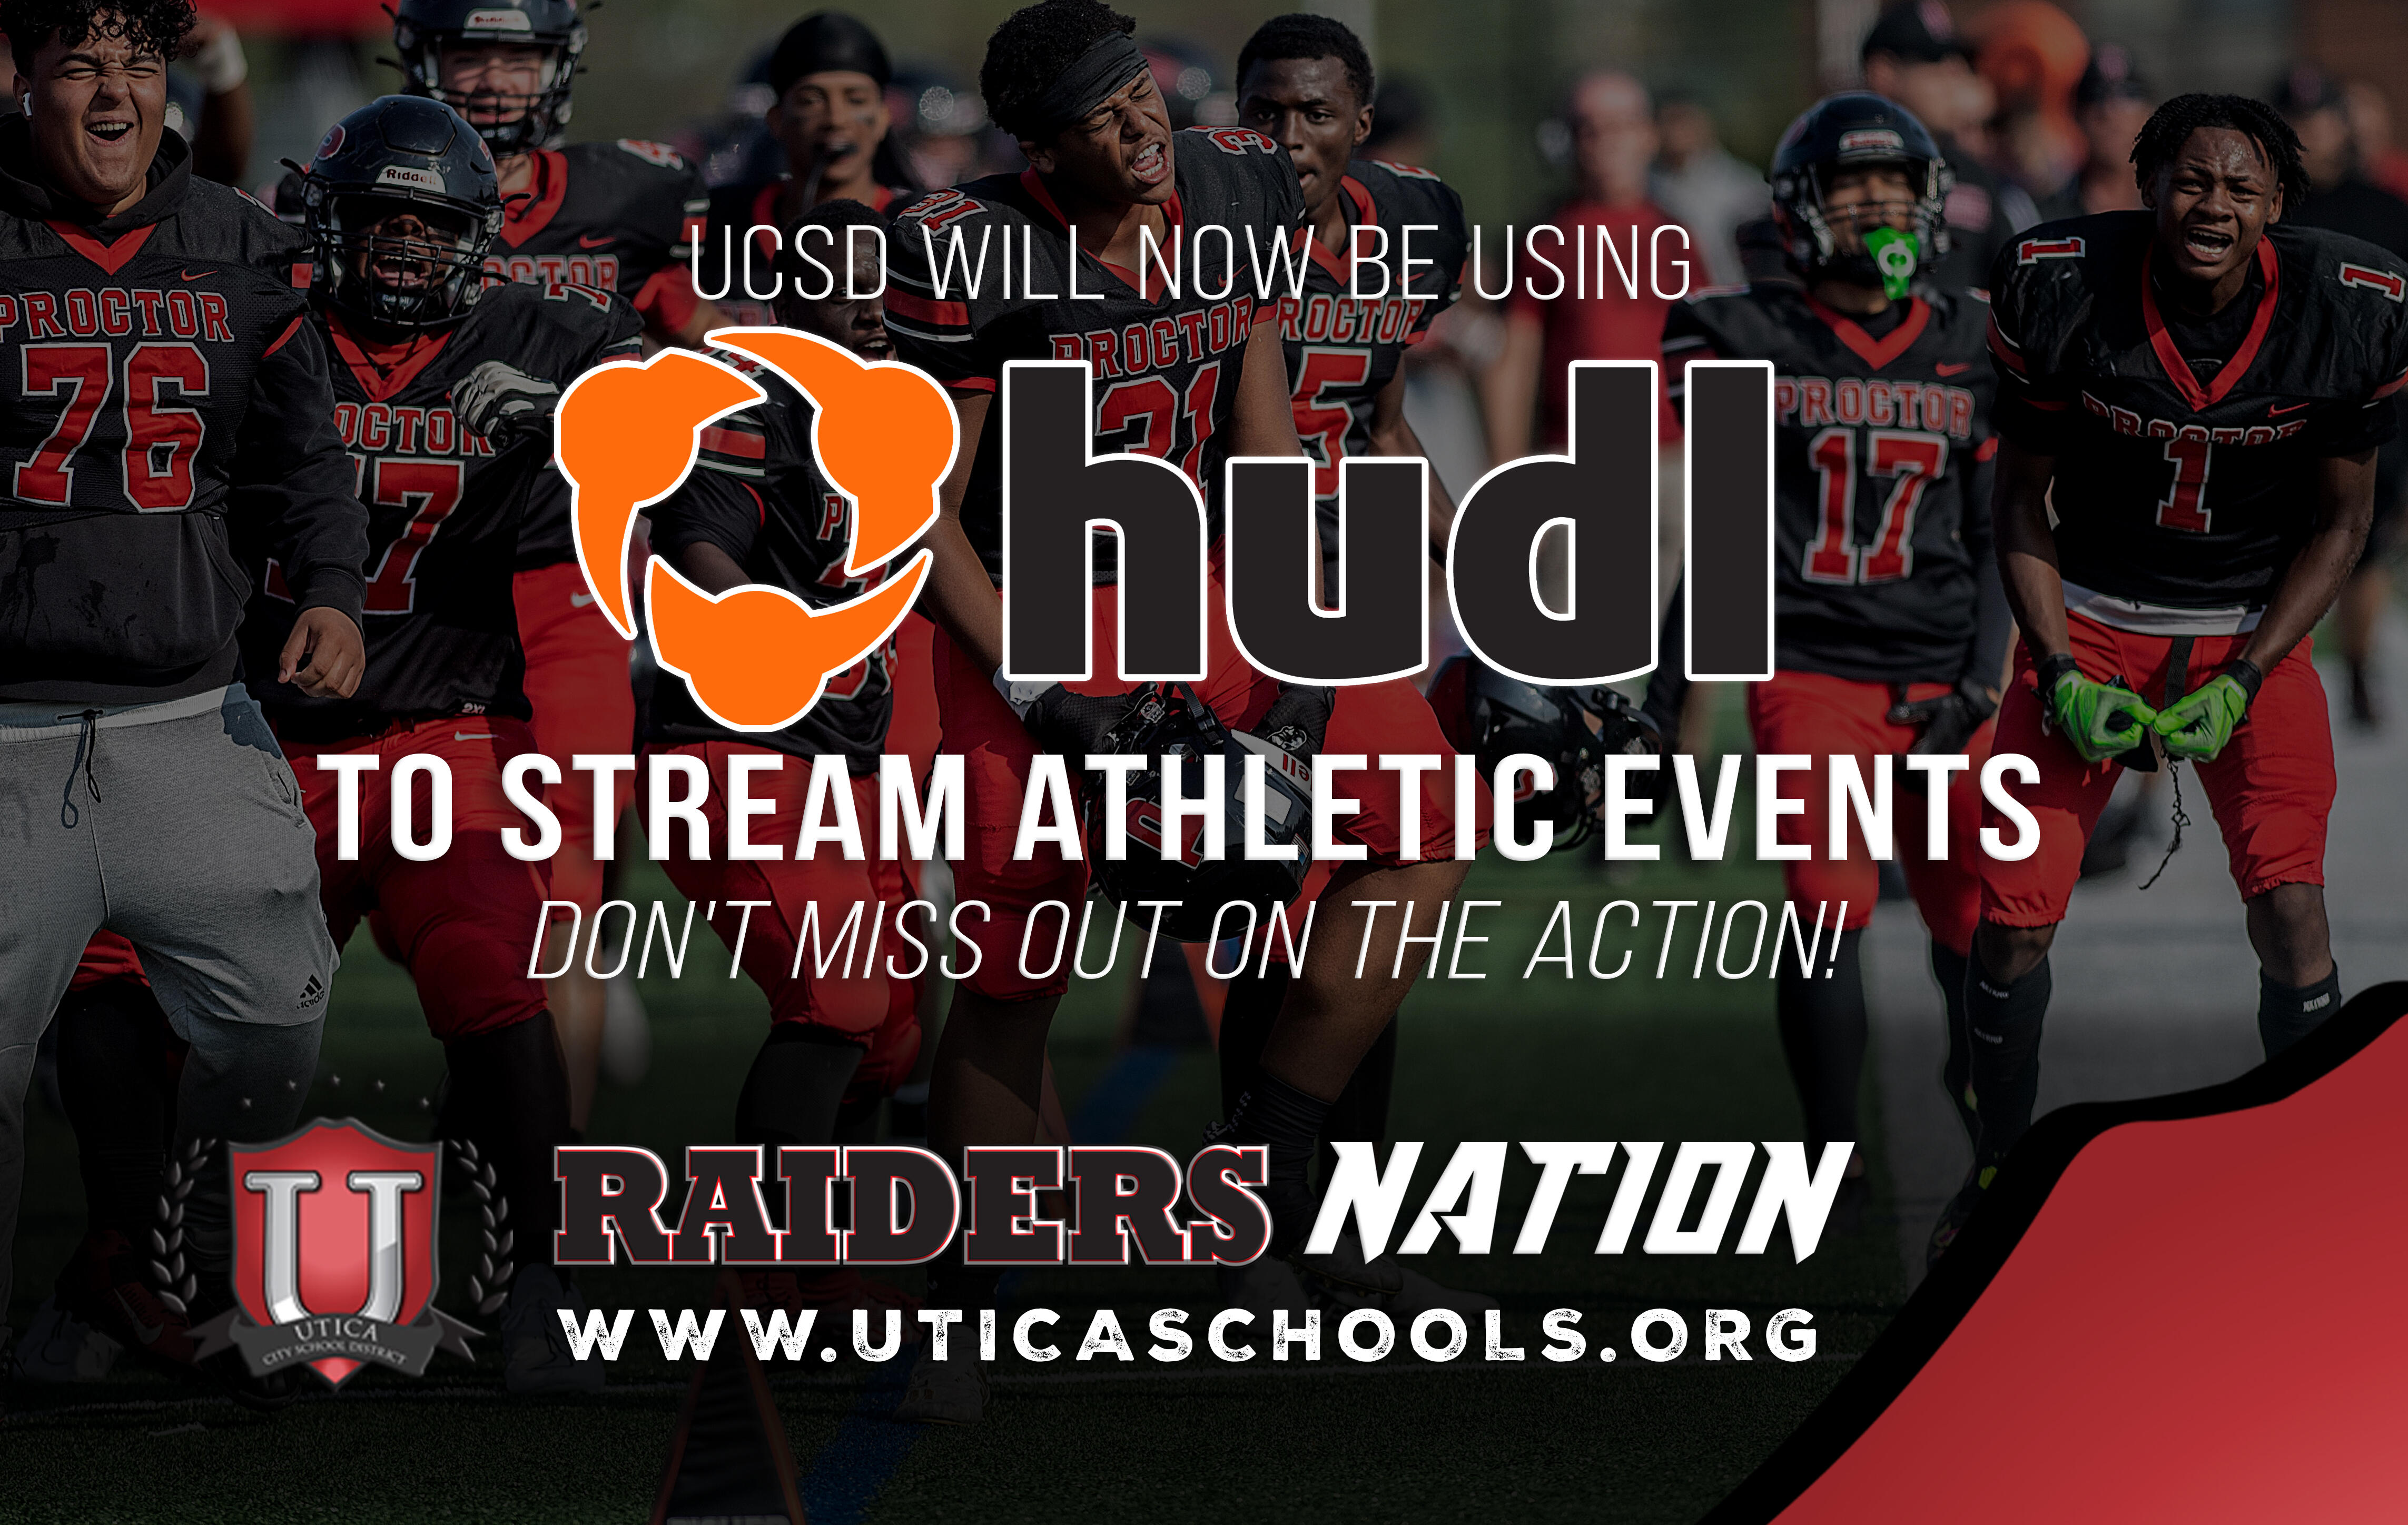 UCSD вече ще използва HUDL TV за предаване на спортни събития. Не пропускайте действието!